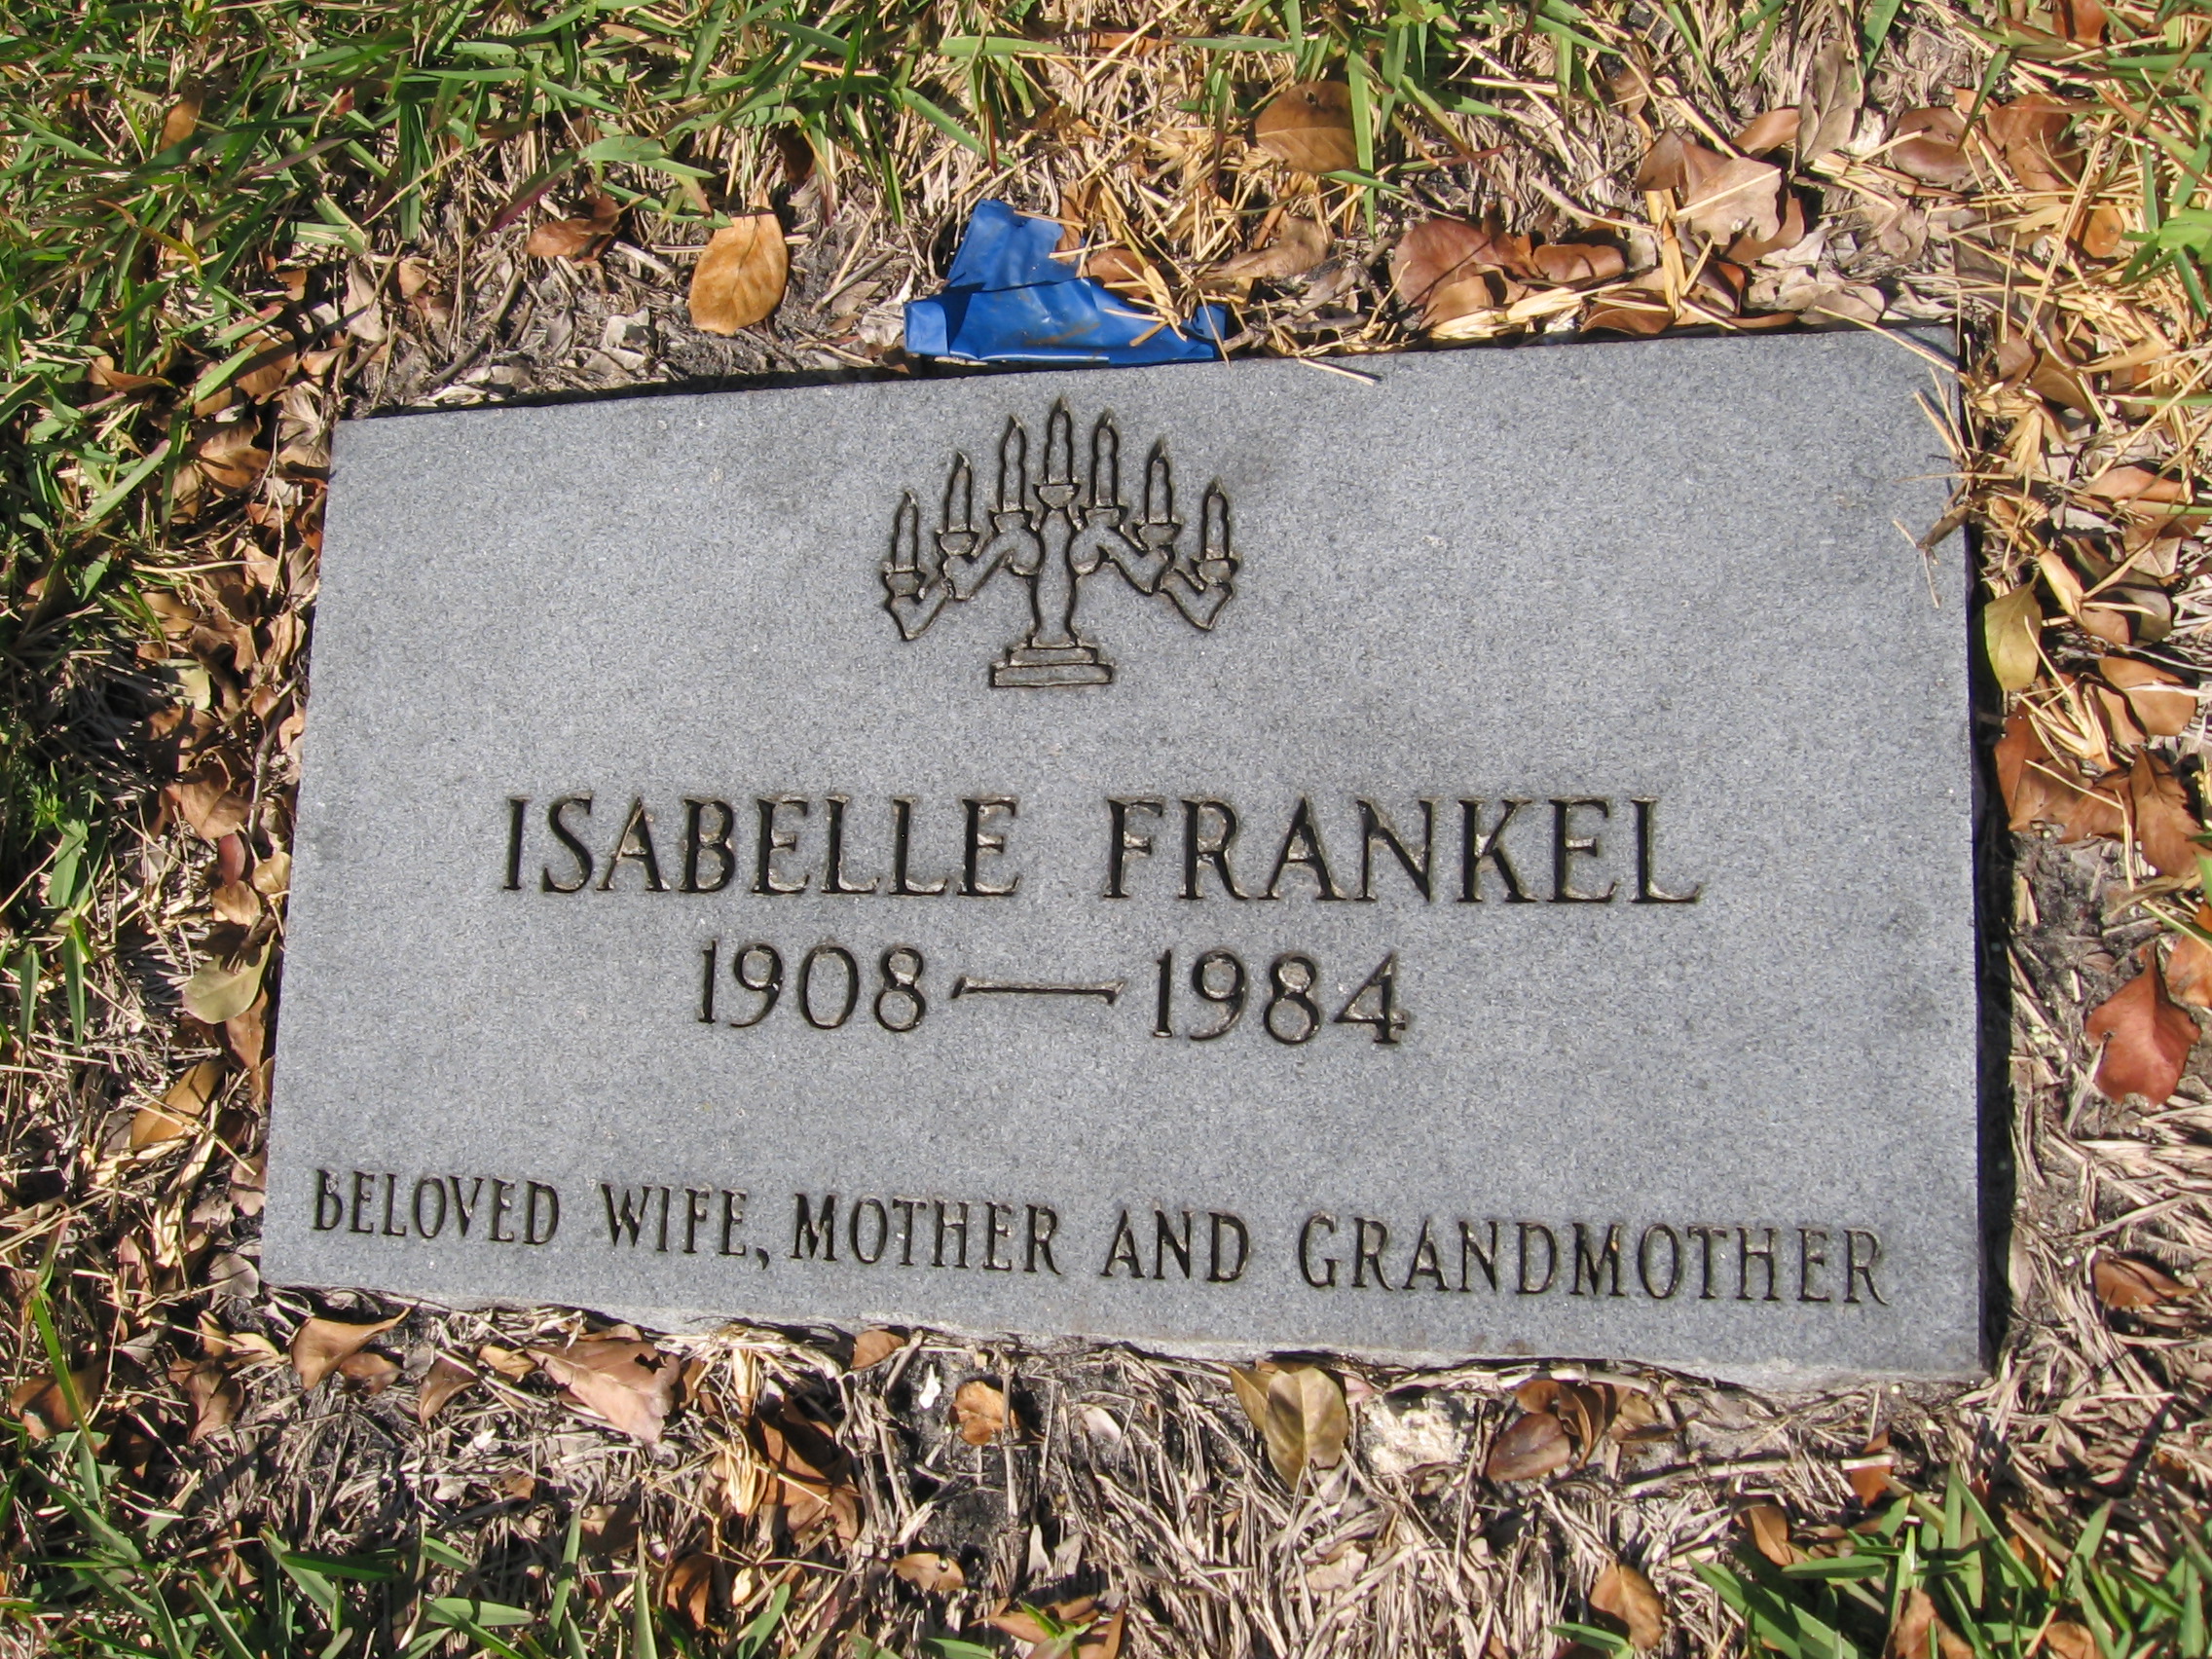 Isabelle Frankel